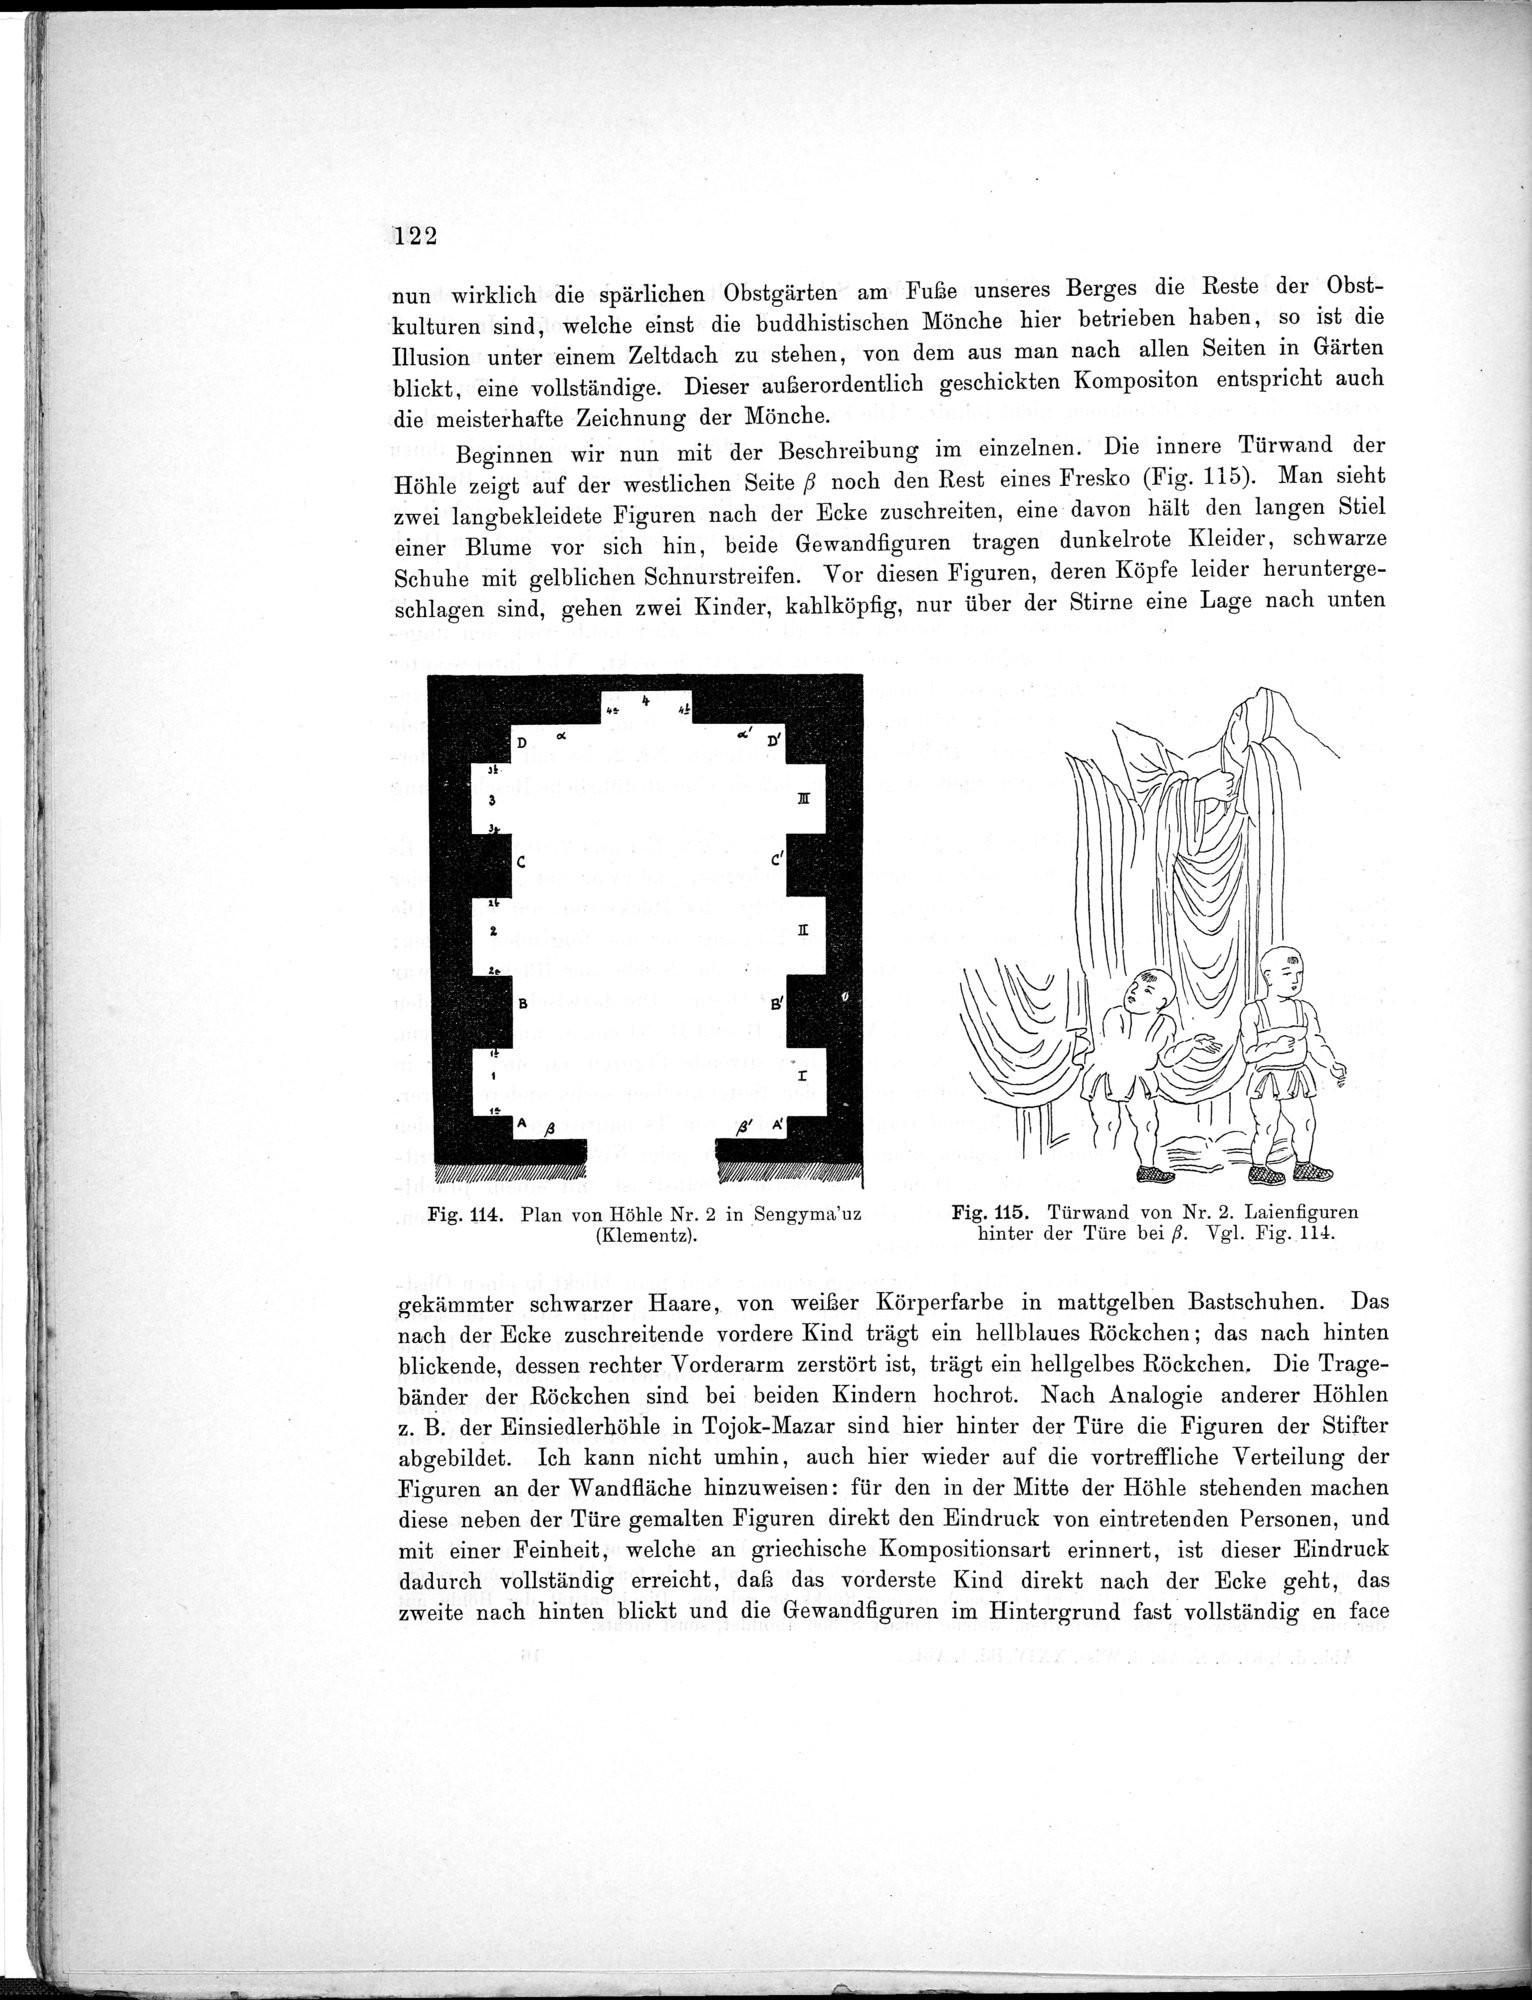 Bericht über archäologische Arbeiten in Idikutschari und Umgebung im Winter 1902-1903 : vol.1 / Page 132 (Grayscale High Resolution Image)